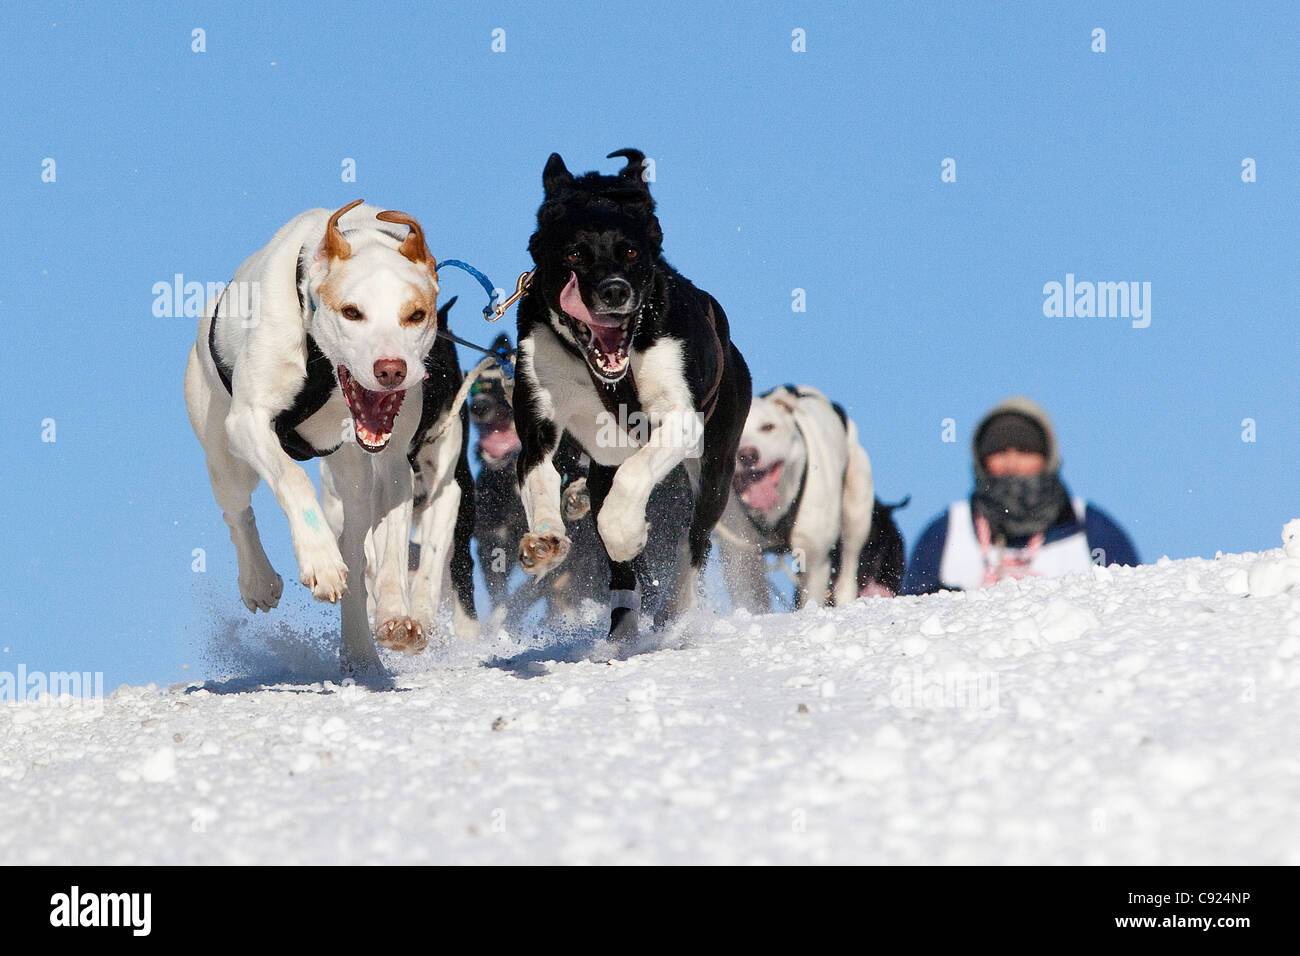 L'équipe de chien court dans la rue Cordova hill lors du Championnat du Monde 2011 Rondy Fourrure Sleddog Race à Anchorage, Alaska Banque D'Images